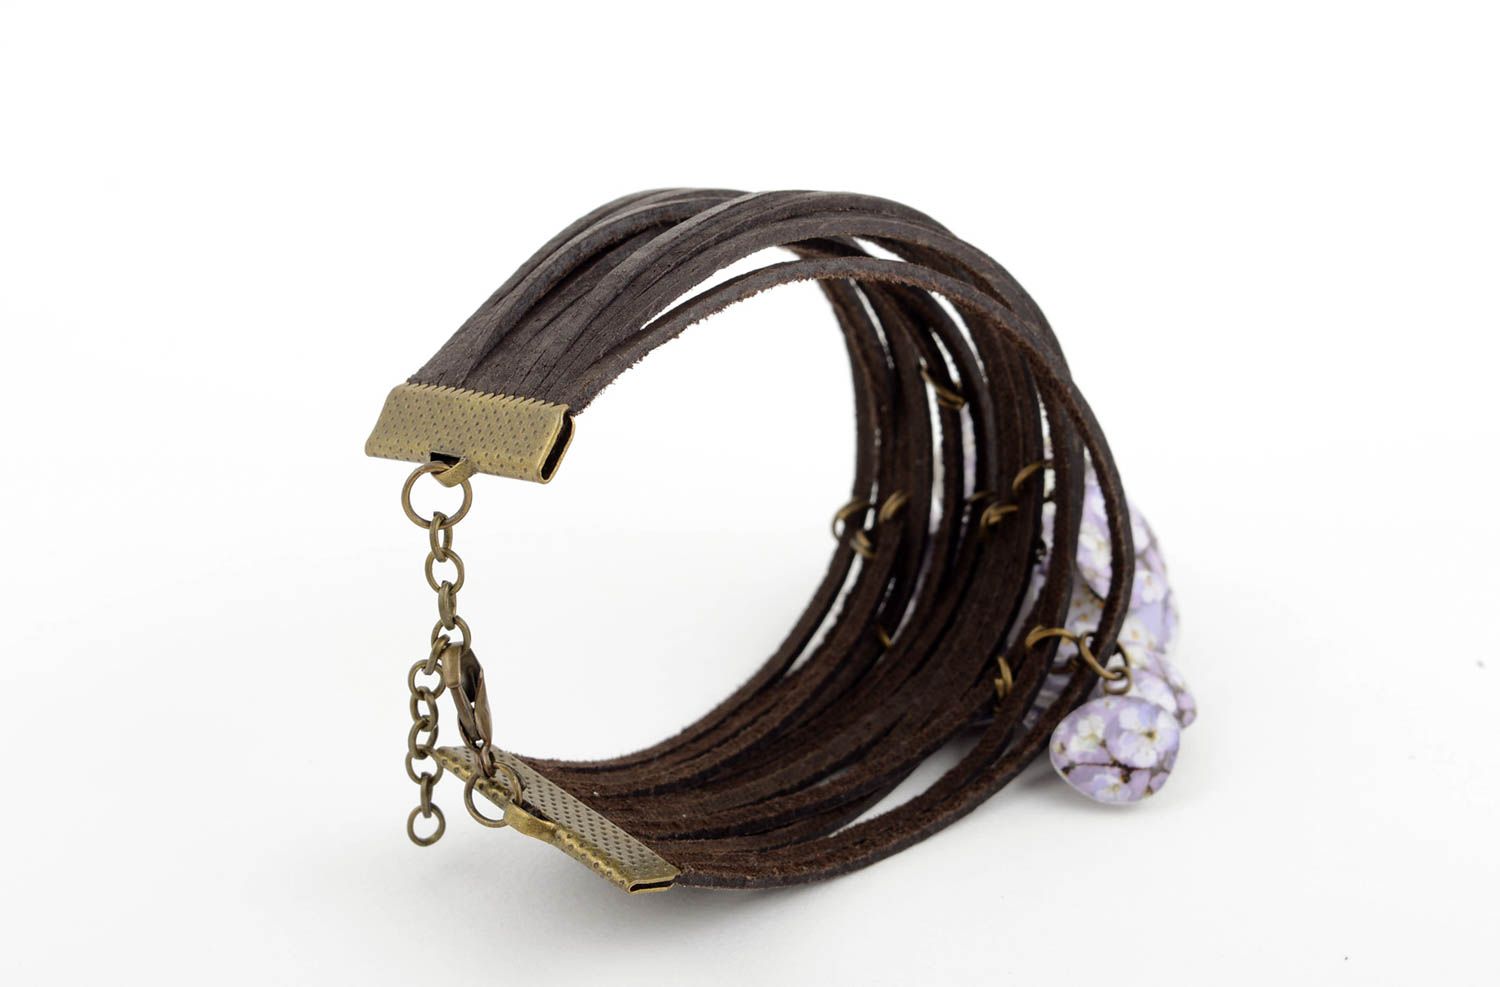 Stylish handmade leather bracelet leather cord bracelet fashion trends photo 4